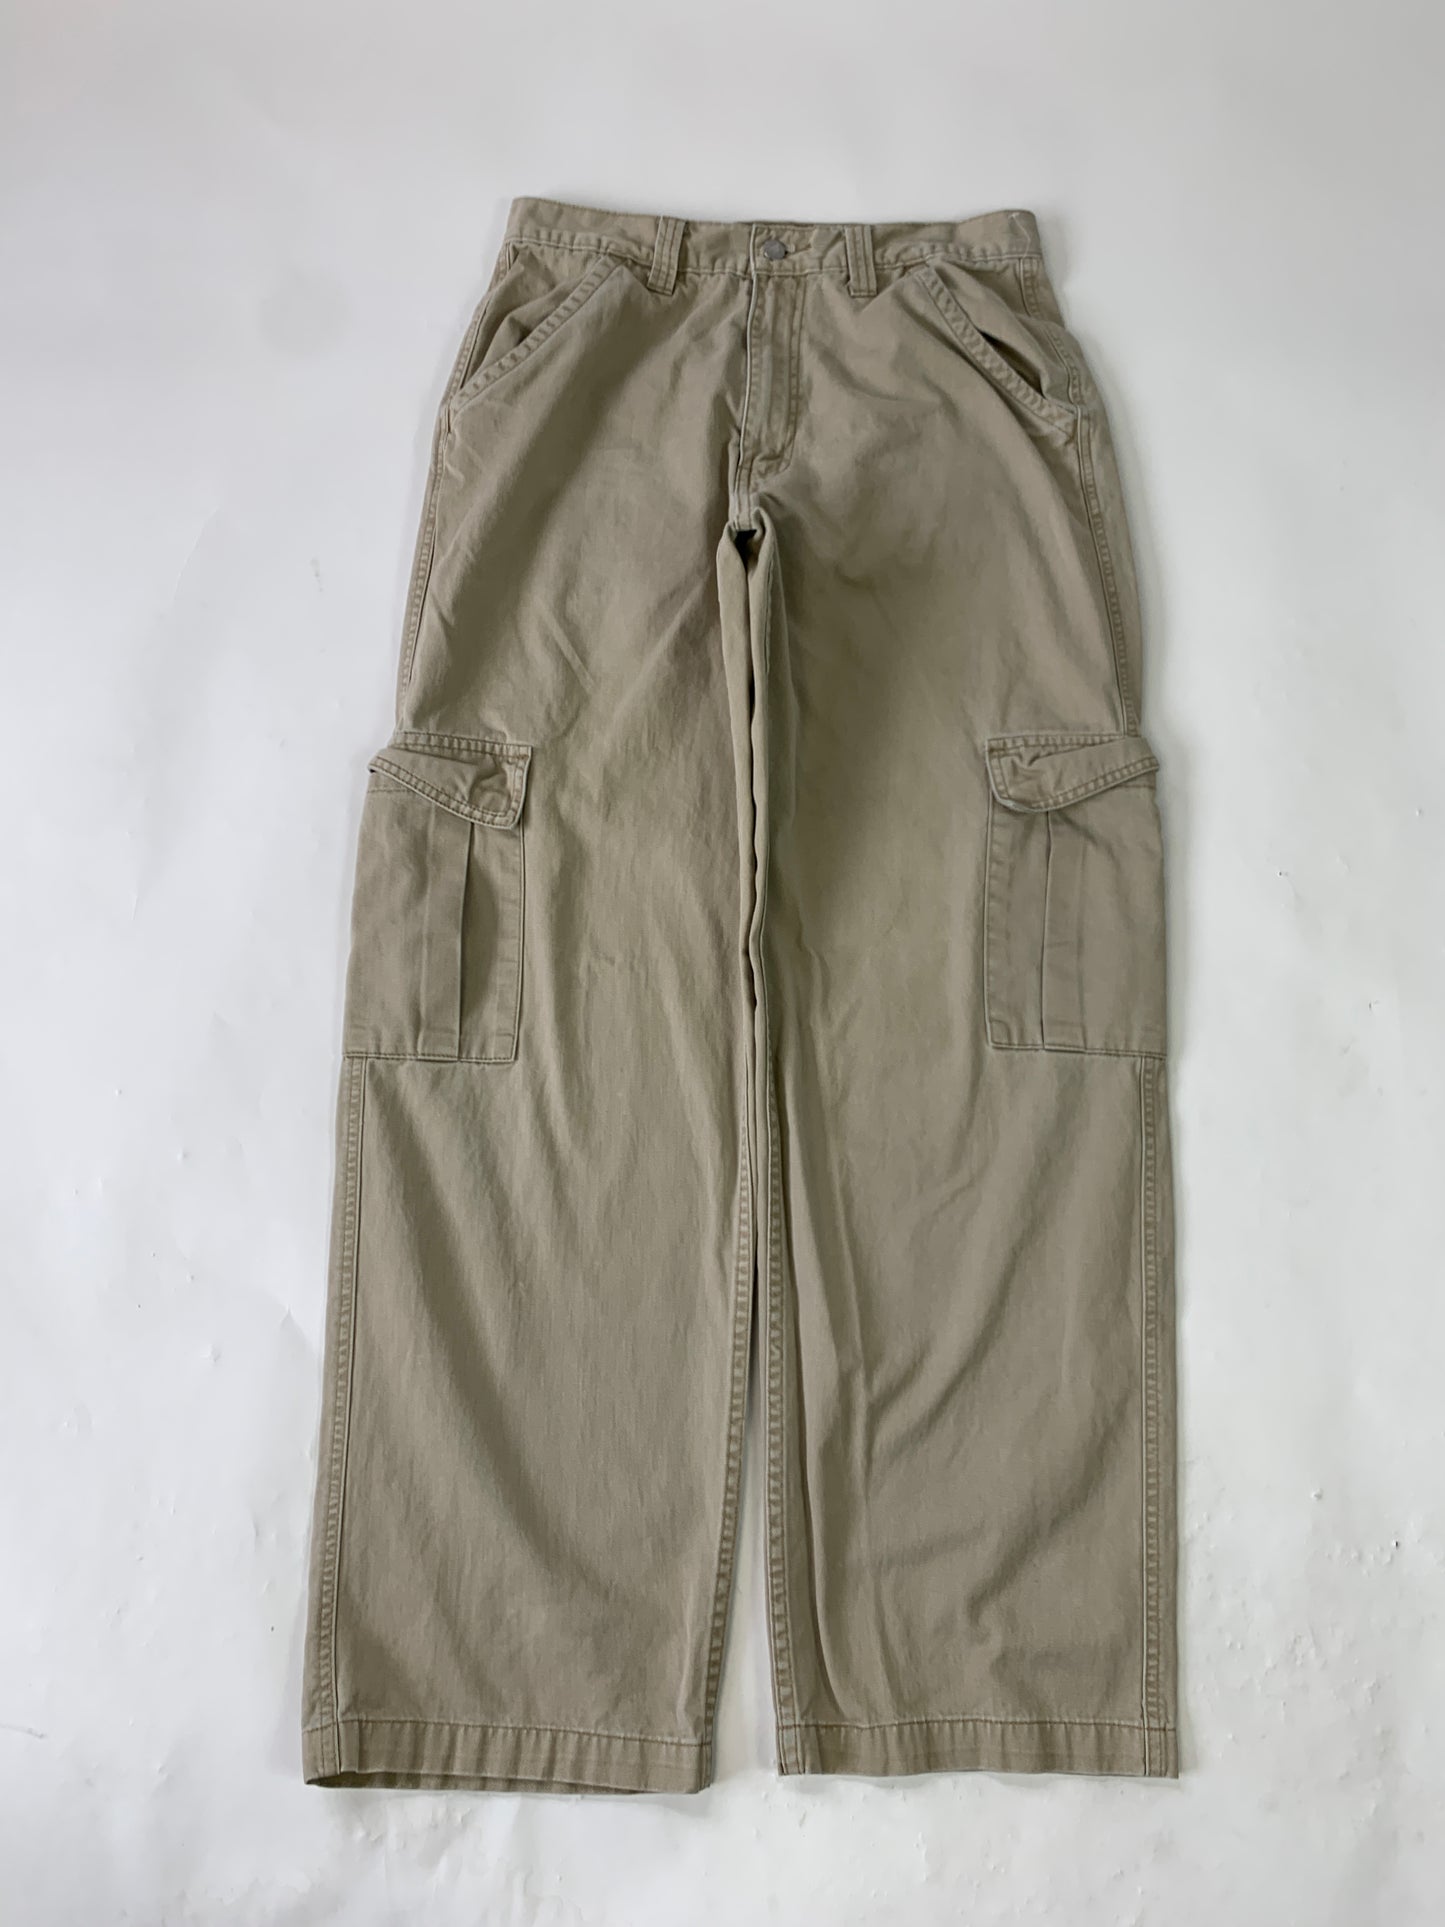 Levis Silvertab Khaki Vintage Cargo Pants - 32 x 34